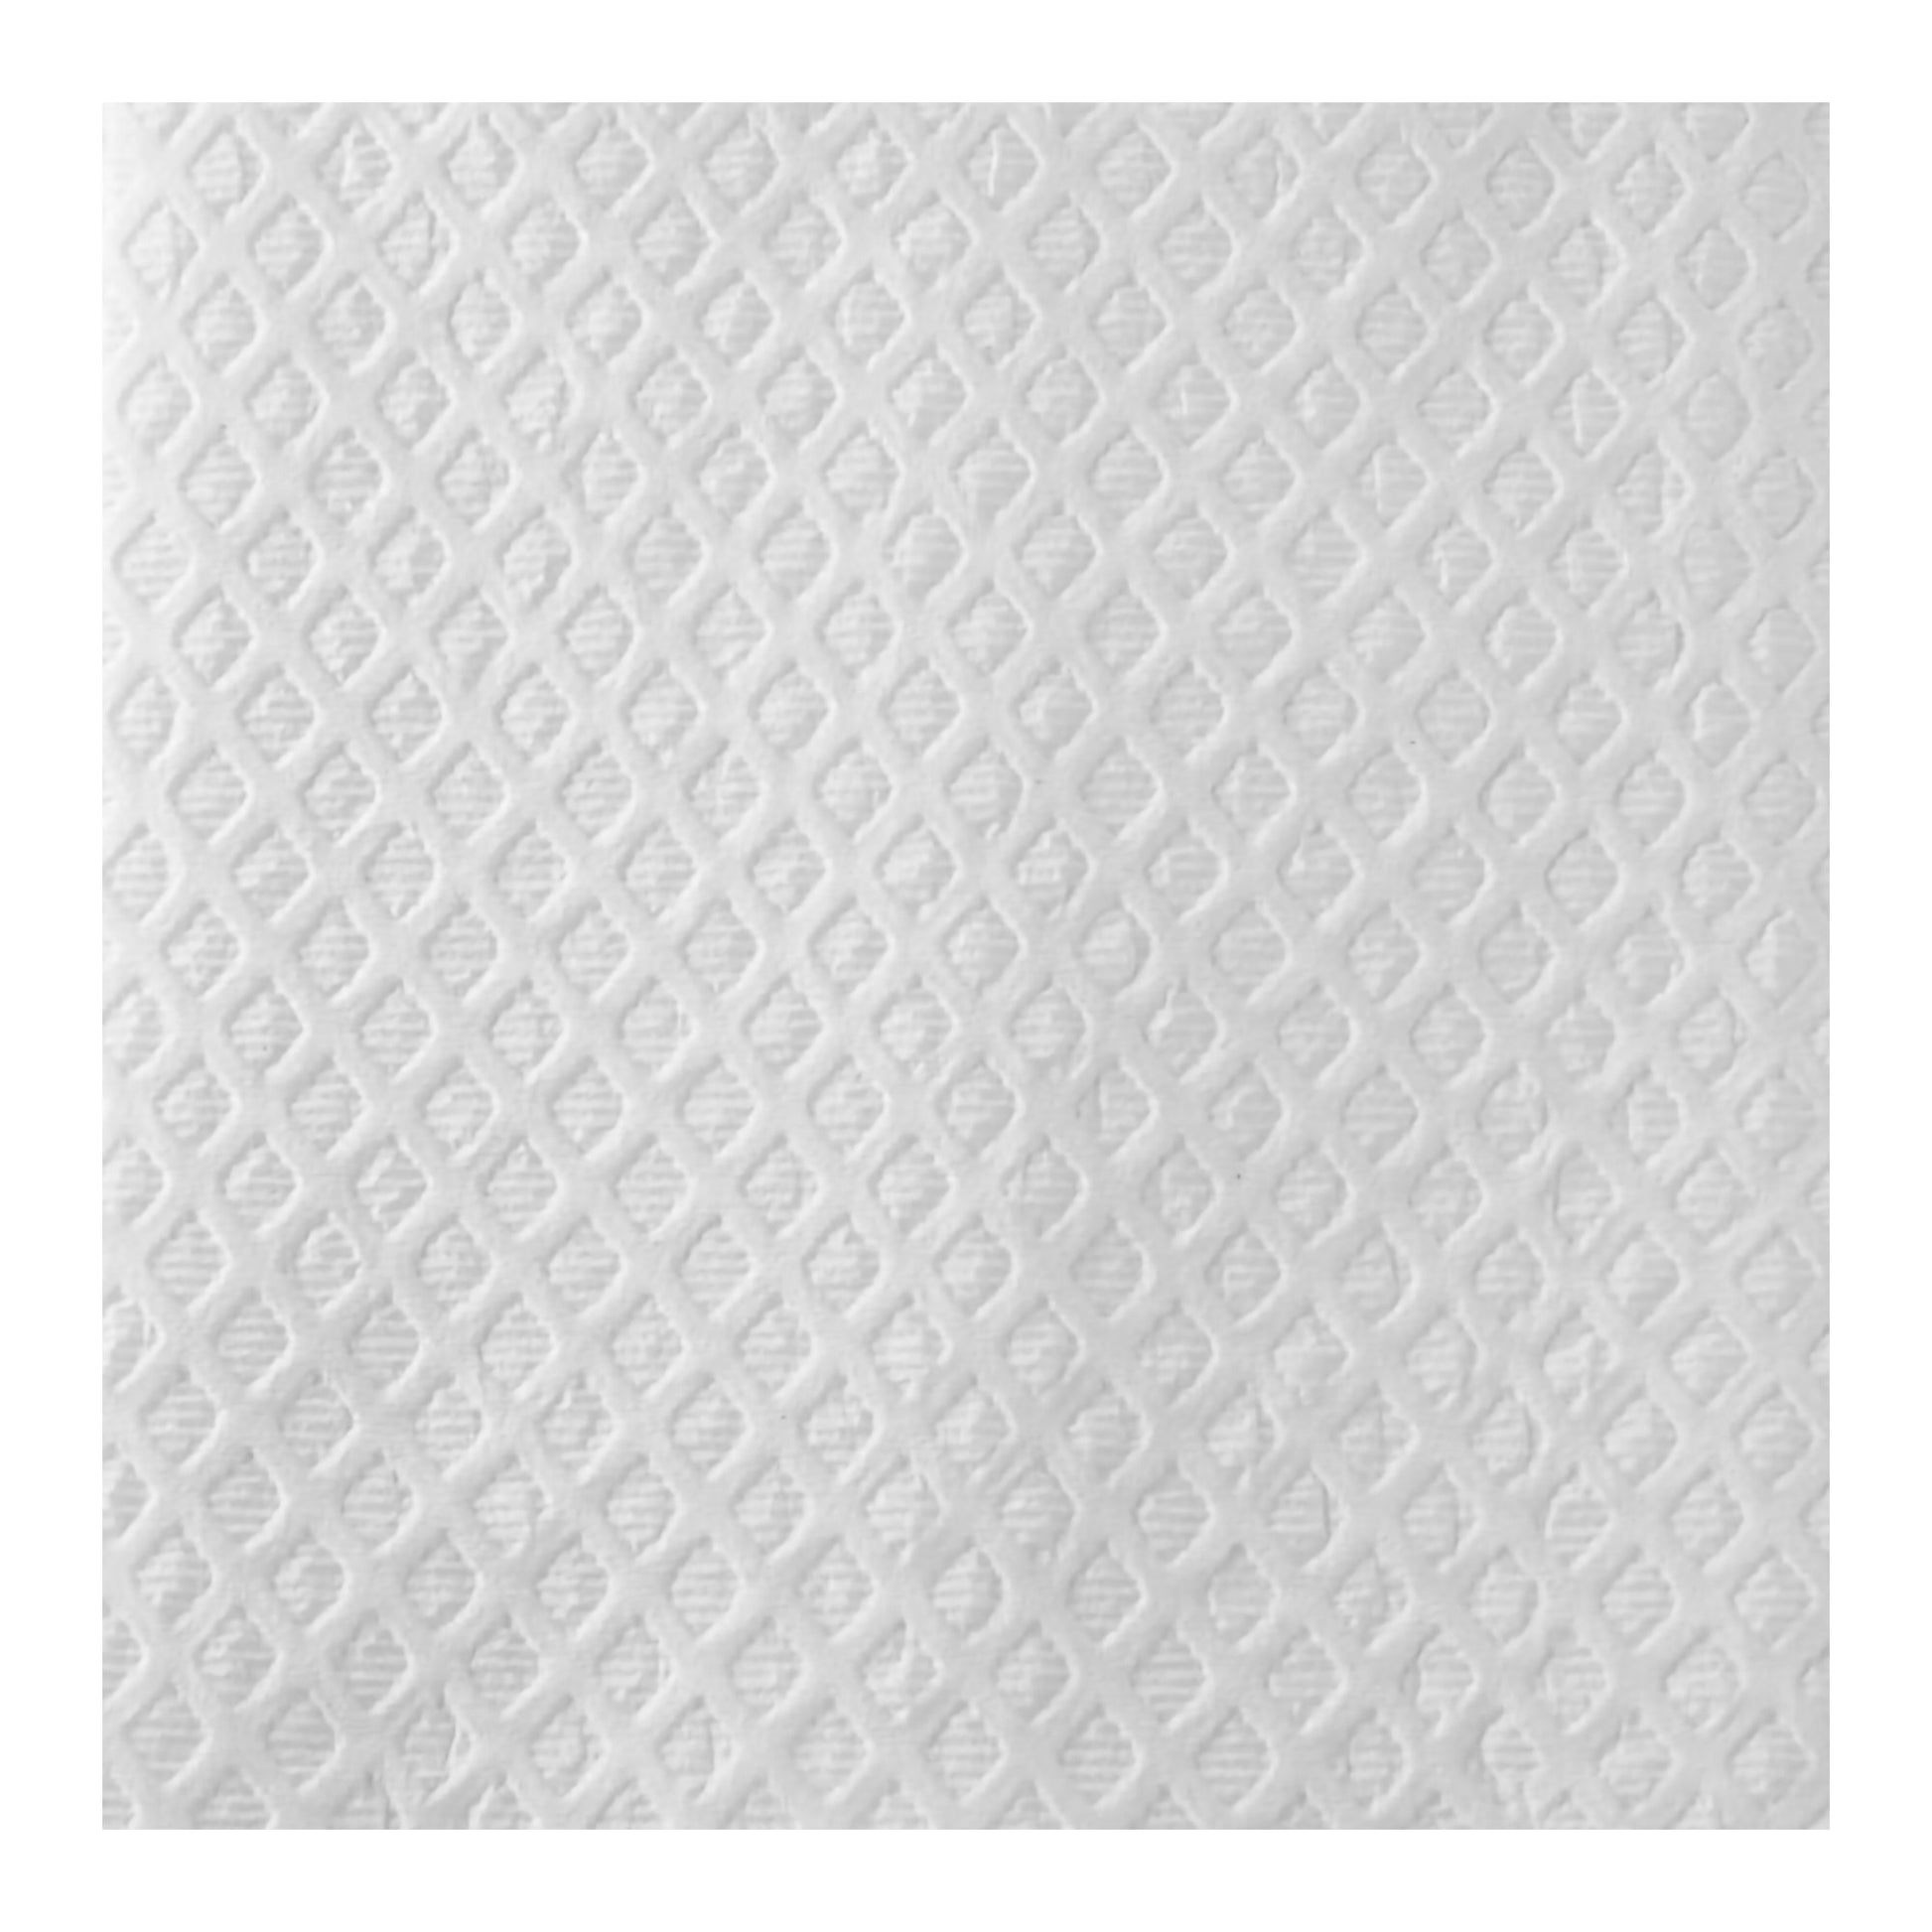 Tidi® White Procedure Towel, 13 X 18 Inch, Sold As 500/Case Tidi 9810865